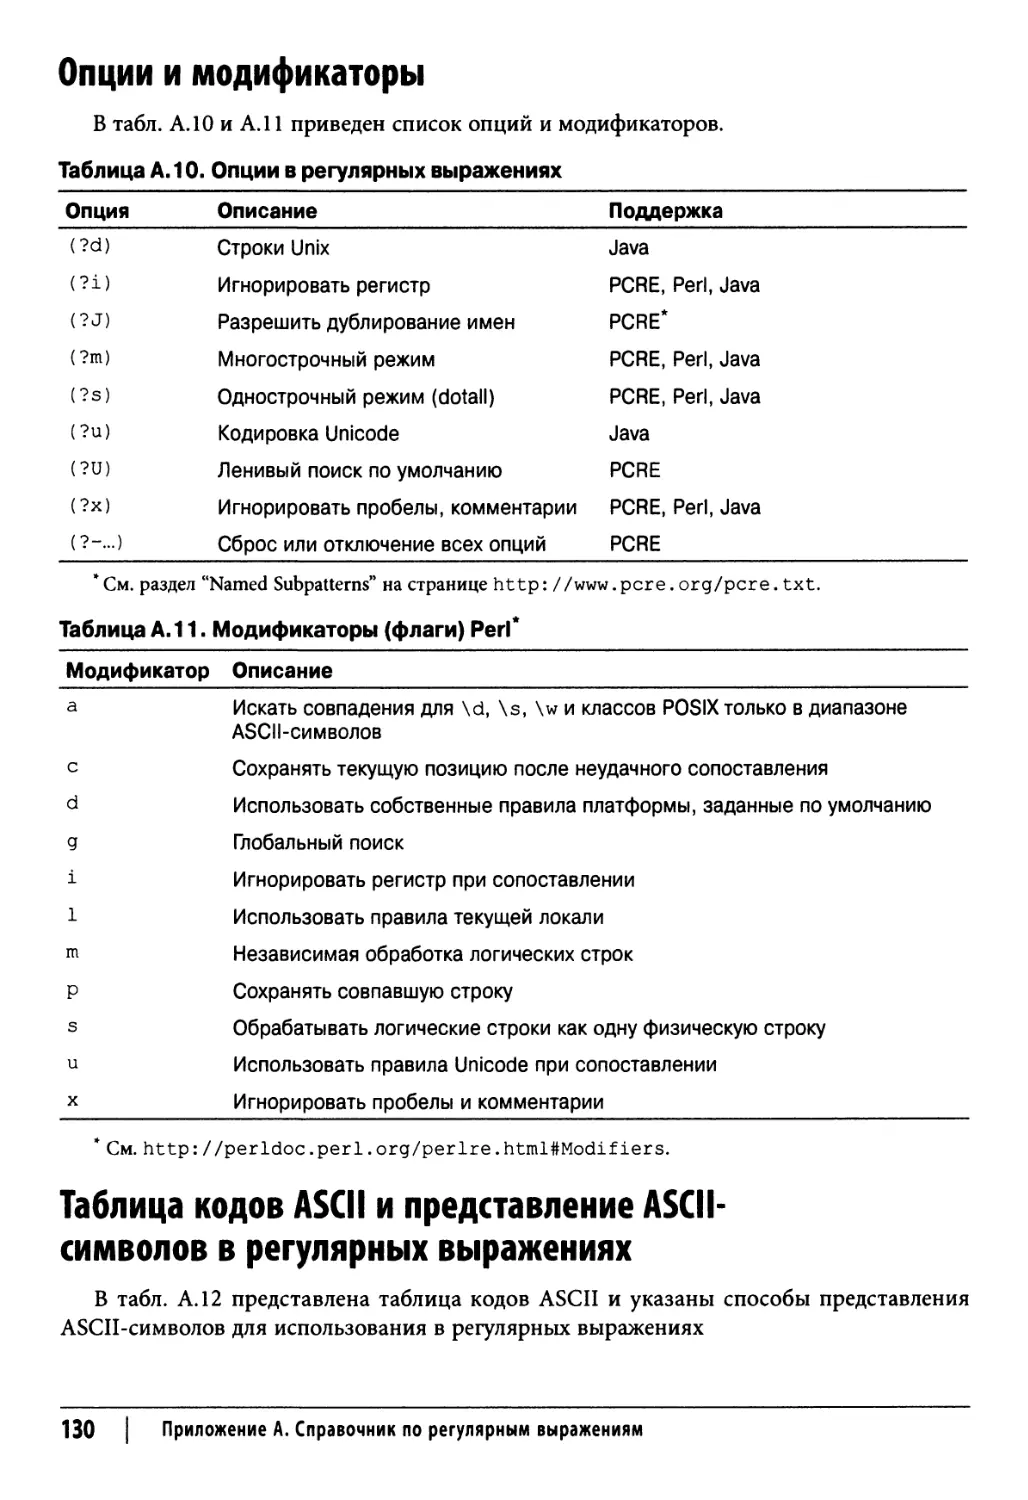 Опции и модификаторы 130 Таблица кодов ASCII и представление ASCII-символов в регулярных выражениях